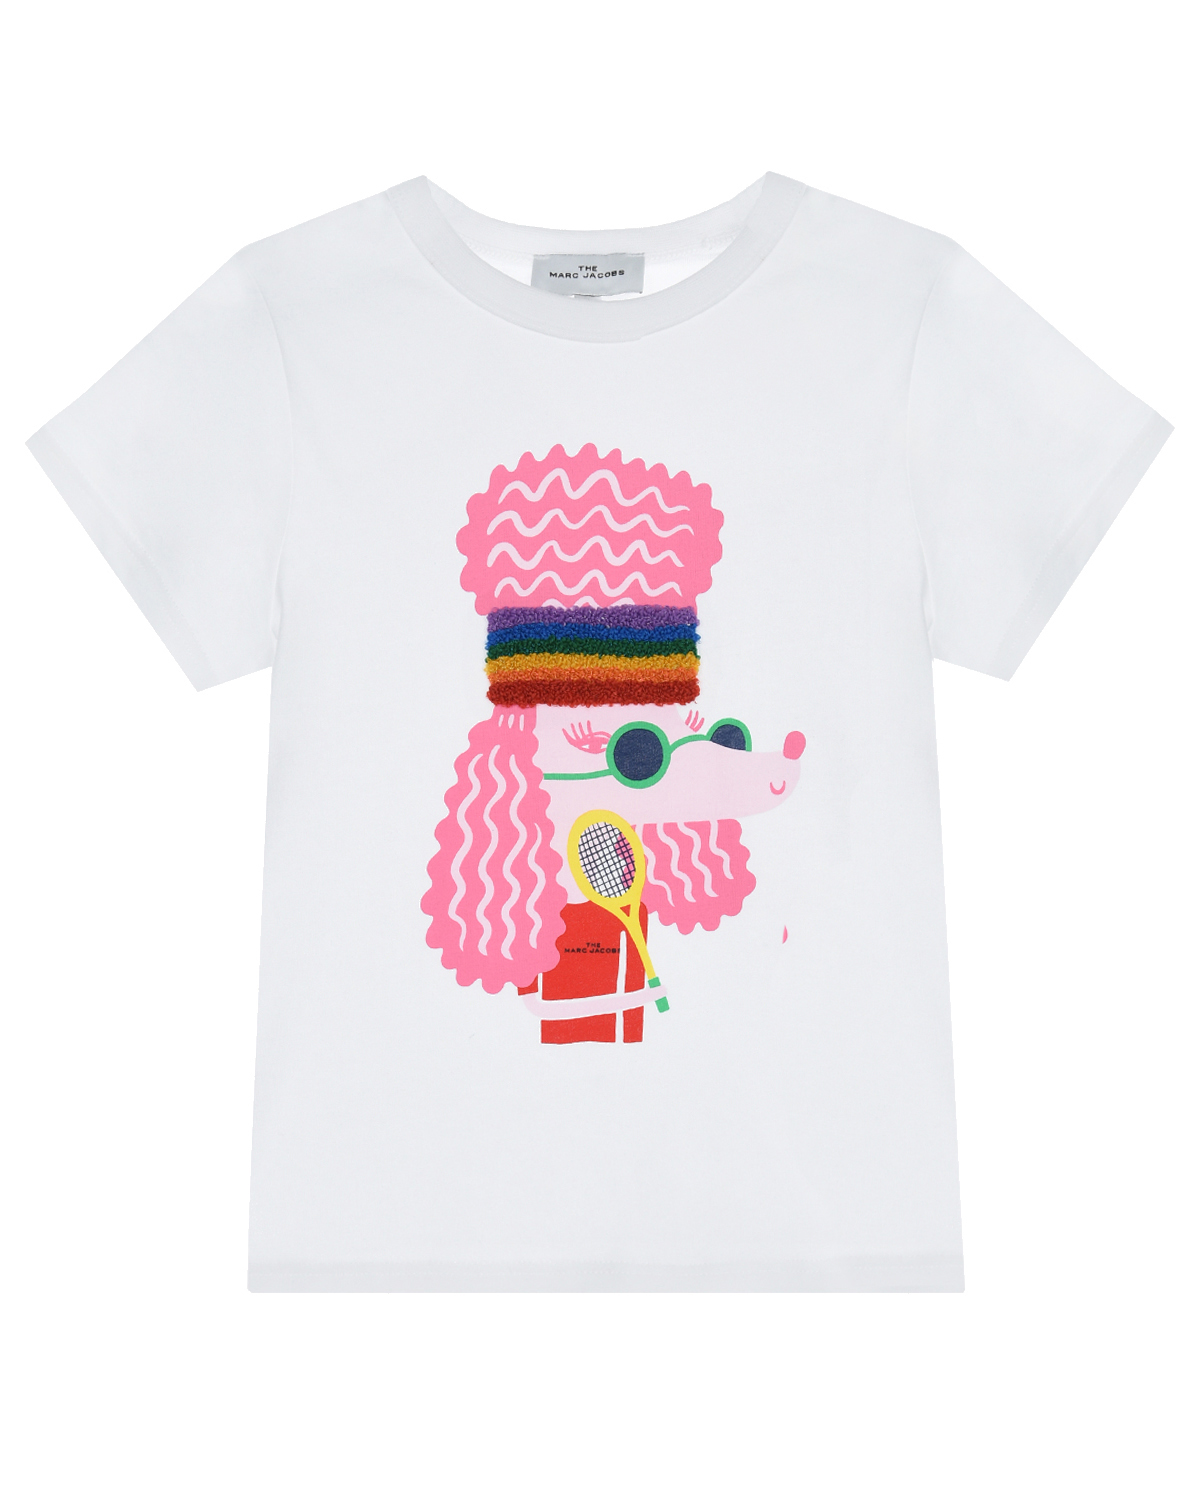 Купить Белая футболка с принтом розовый пудель Marc Jacobs (The) детская, Белый, 100%хлопок, 96%хлопок+4%эластан